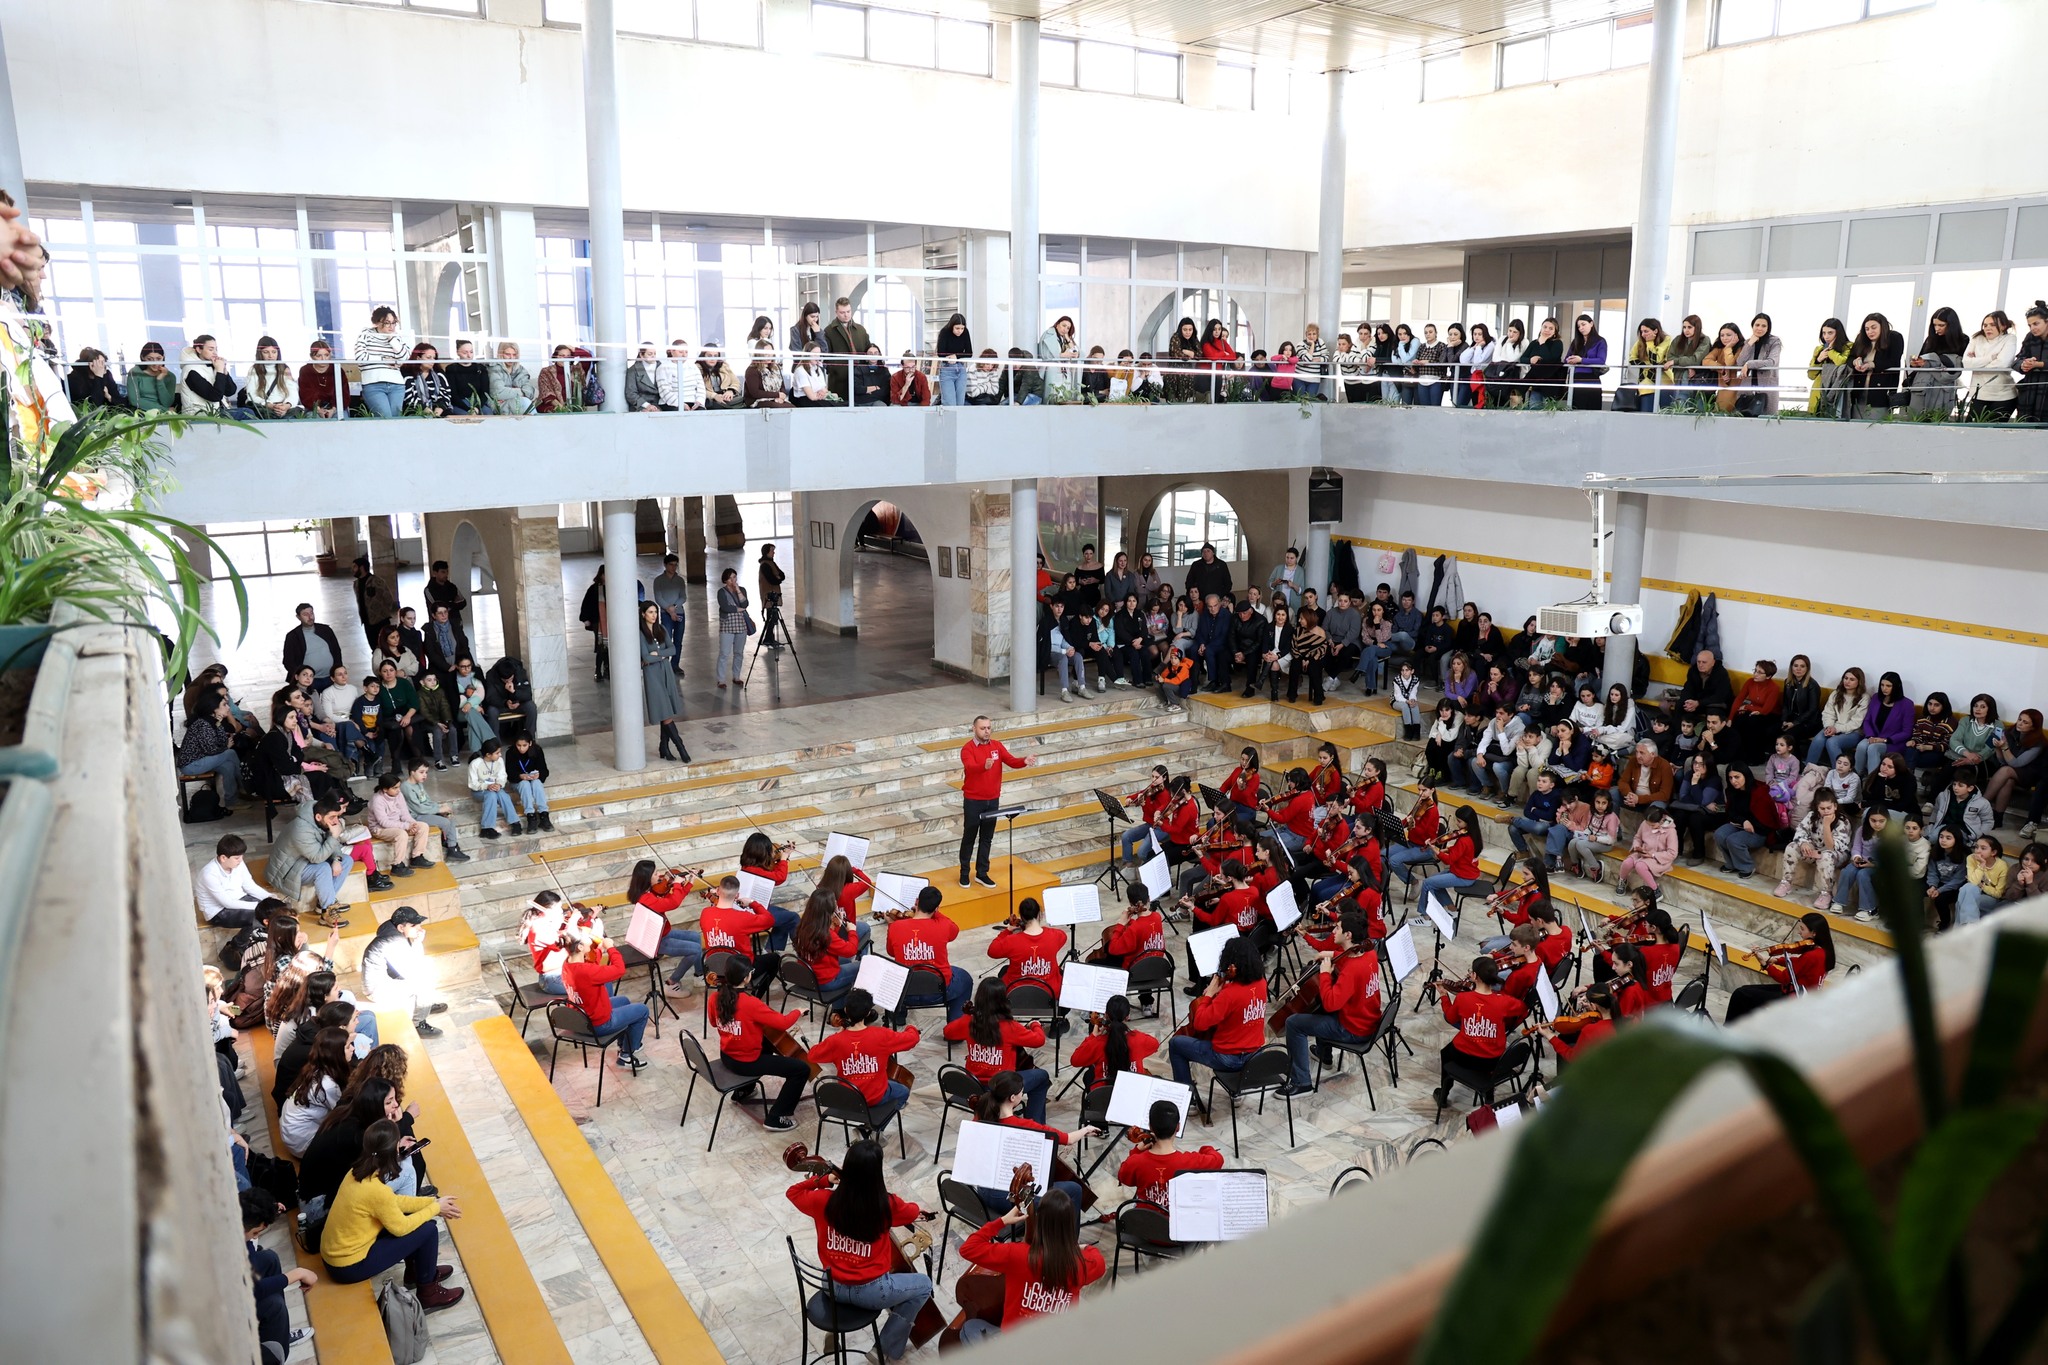 L'orchestre symphonique des jeunes "Erevan" dans le complexe éducatif